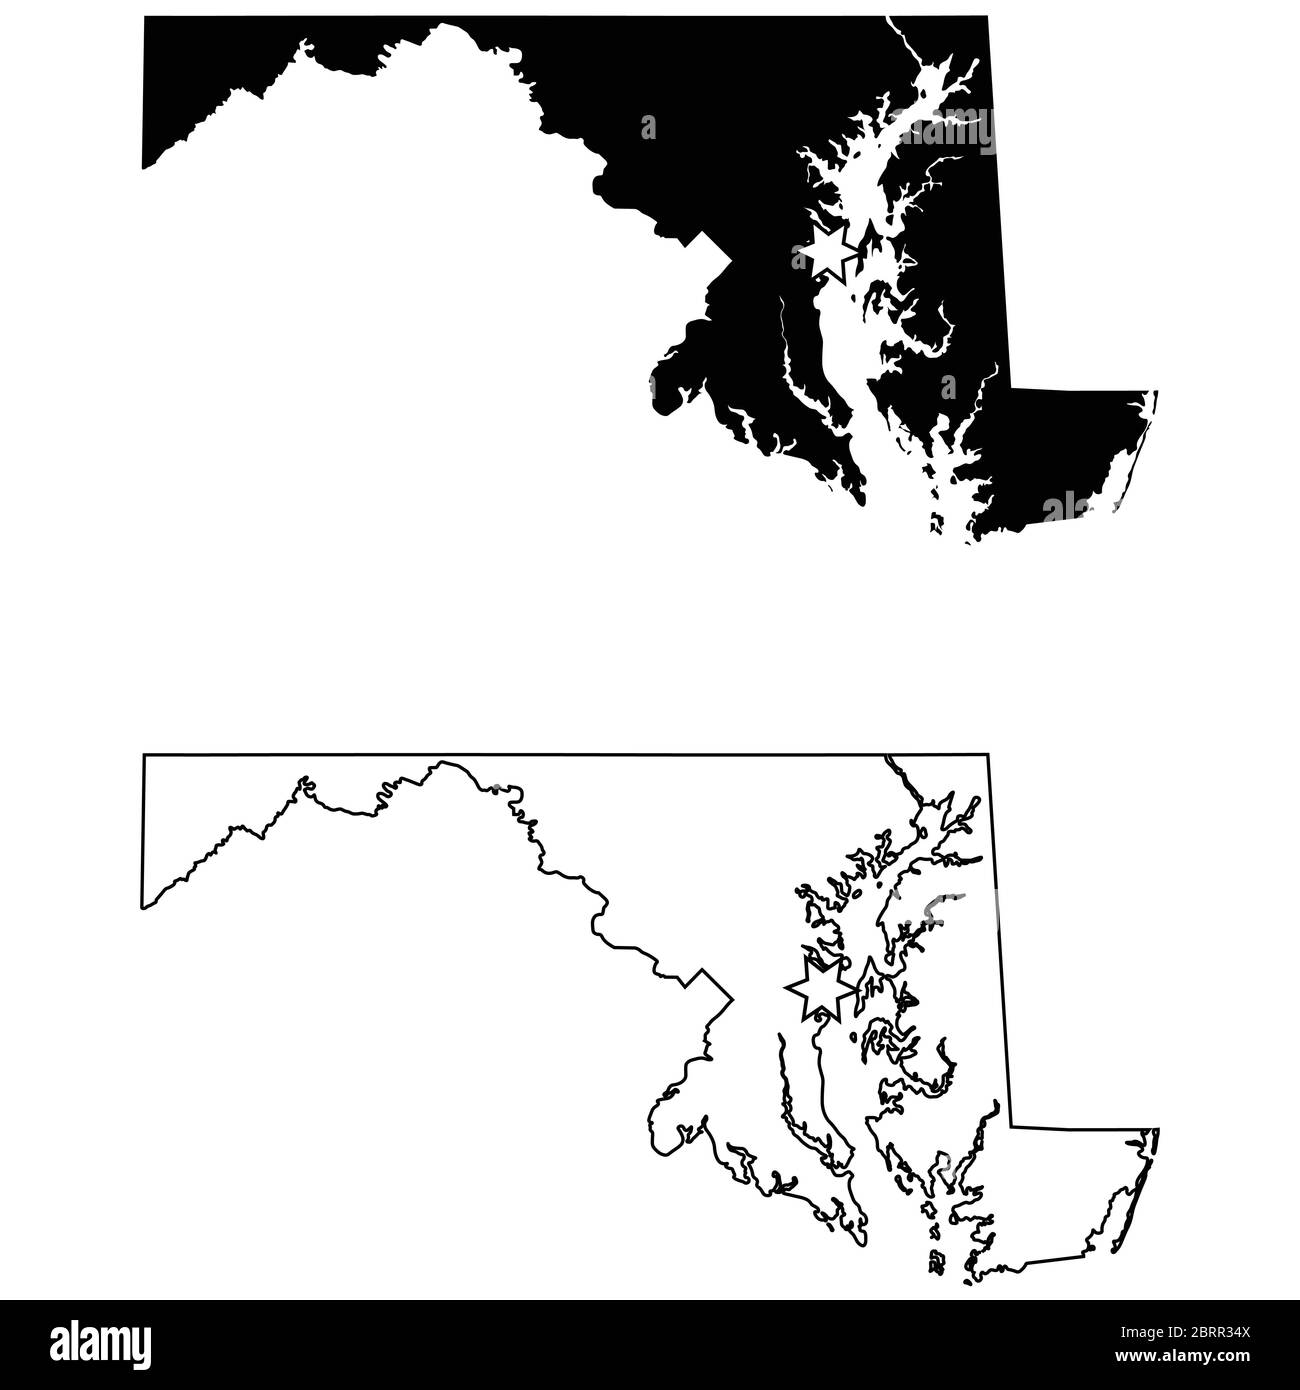 Maryland MD State Map USA mit Capital City Star in Annapolis. Schwarze Silhouette und Umriss isoliert auf weißem Hintergrund. EPS-Vektor Stock Vektor